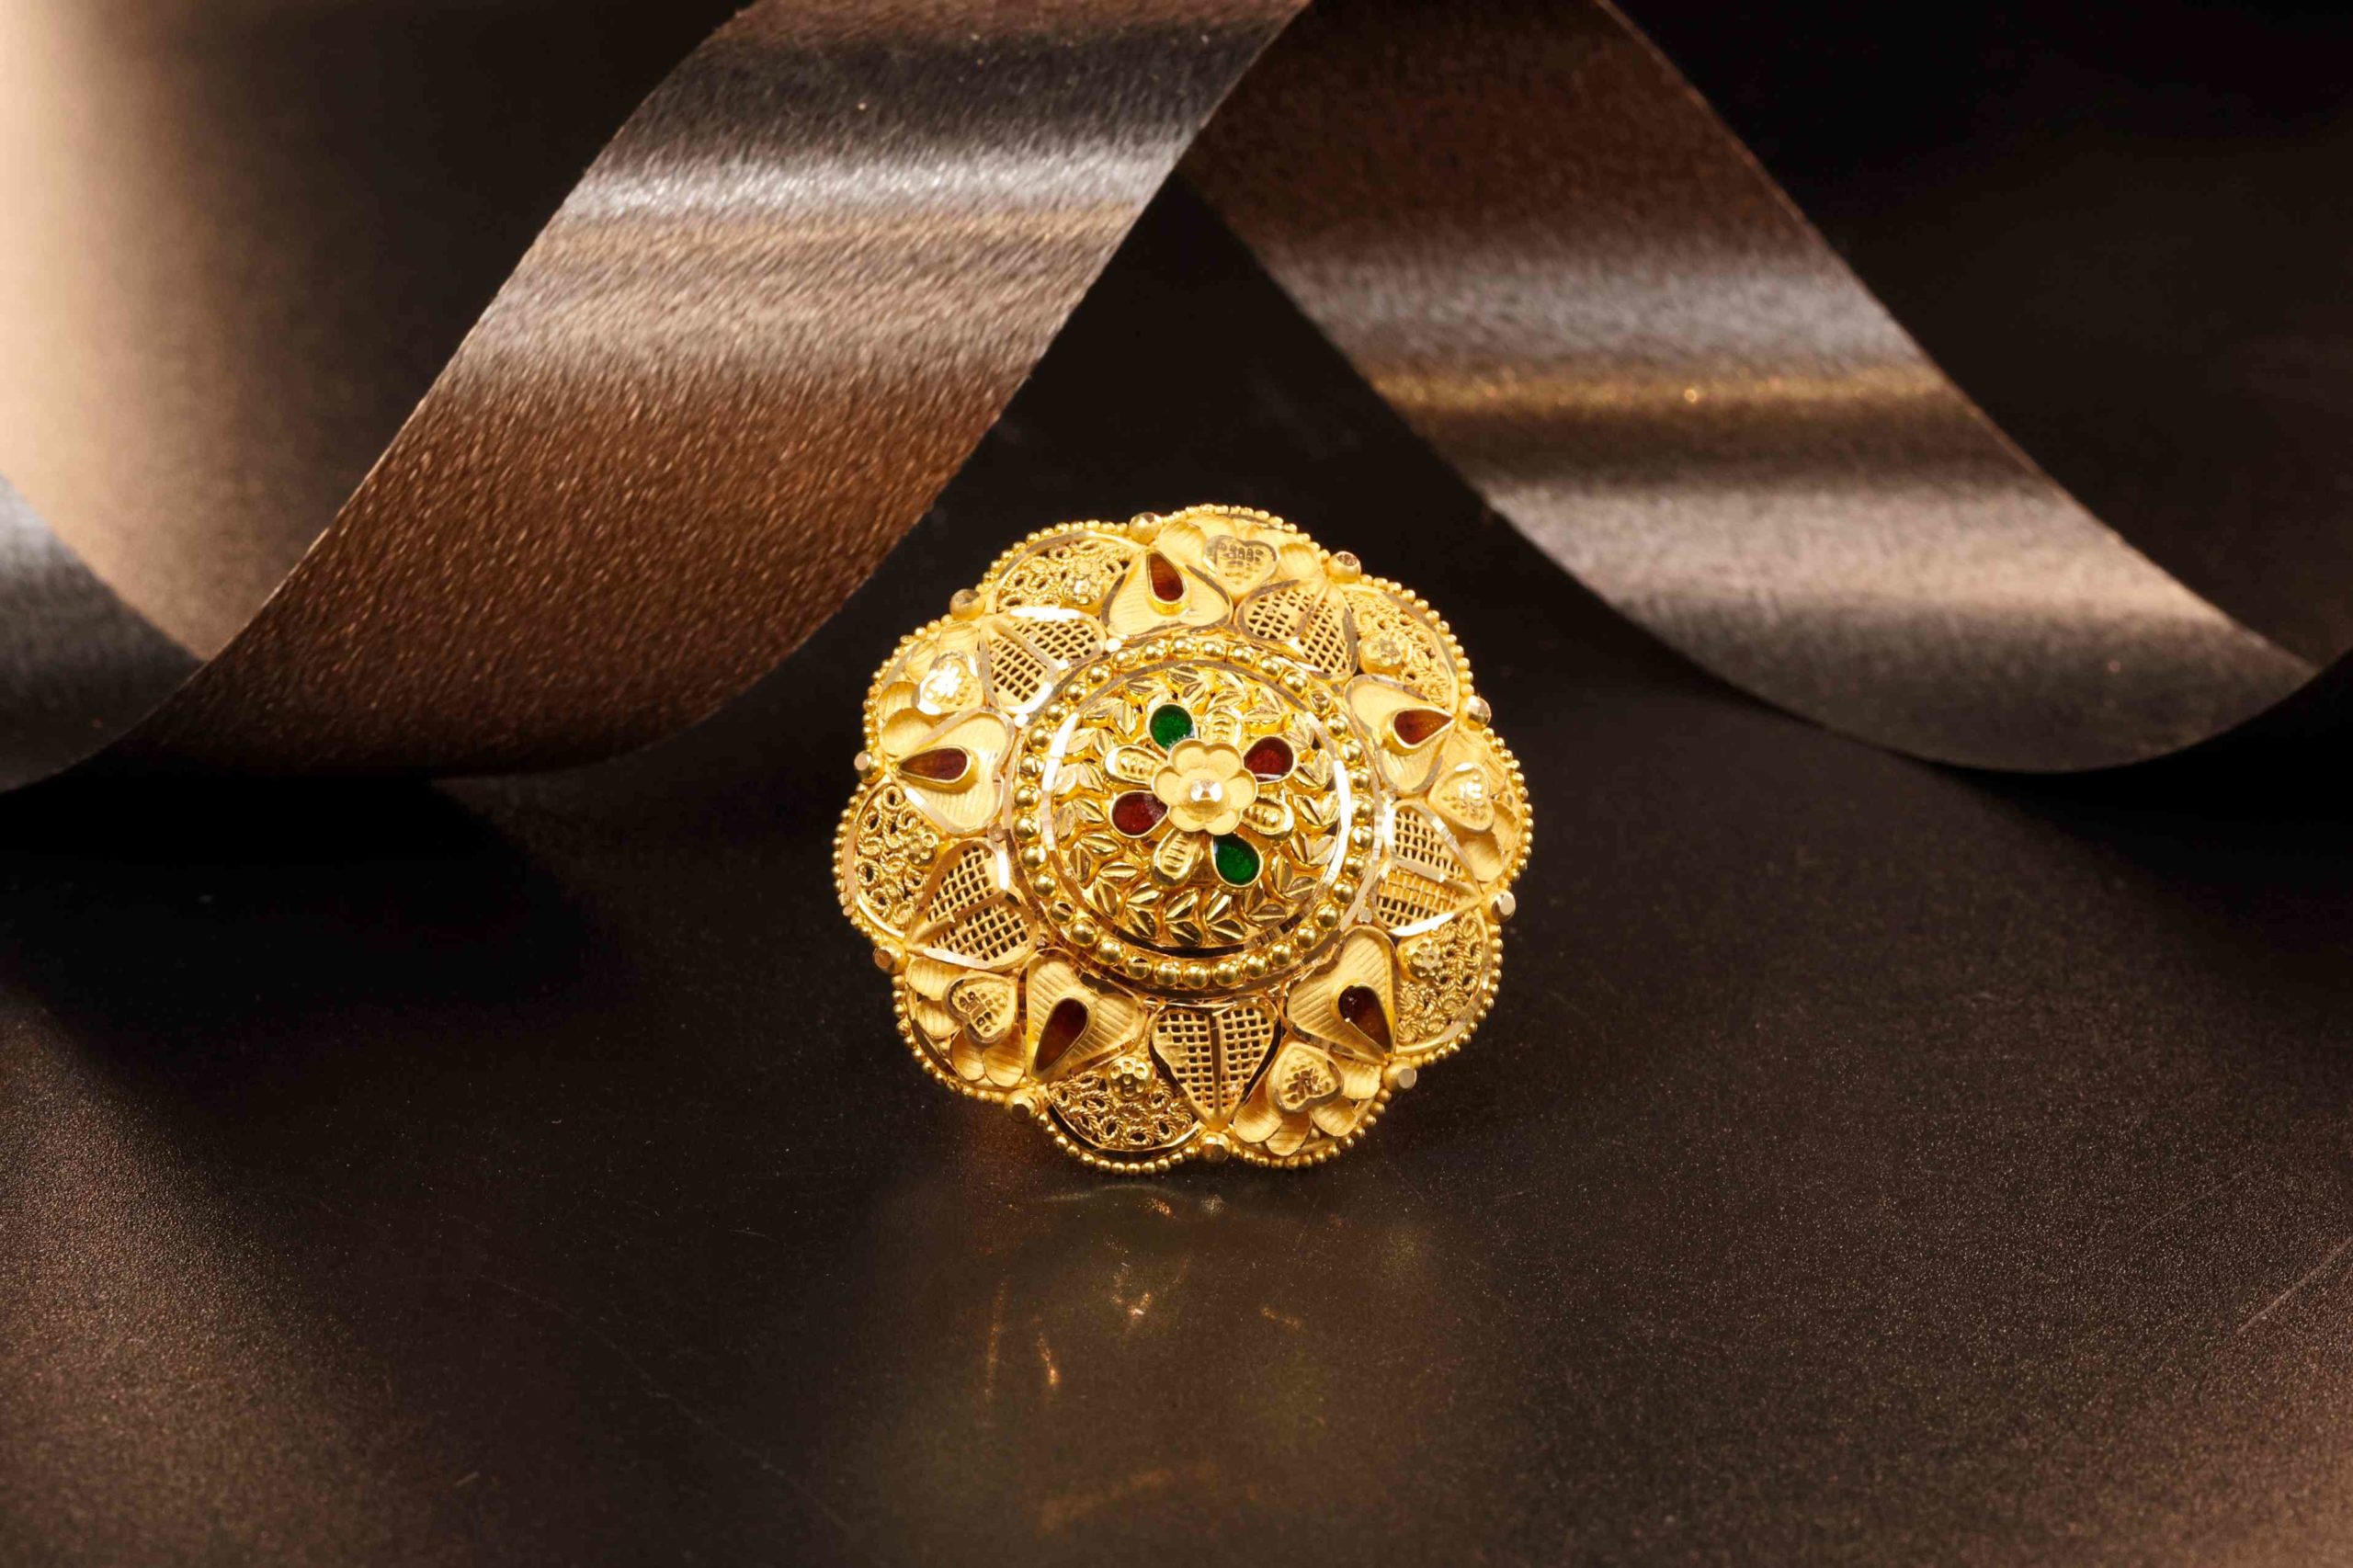 Exquisite Floral Gold Umbrella Ring